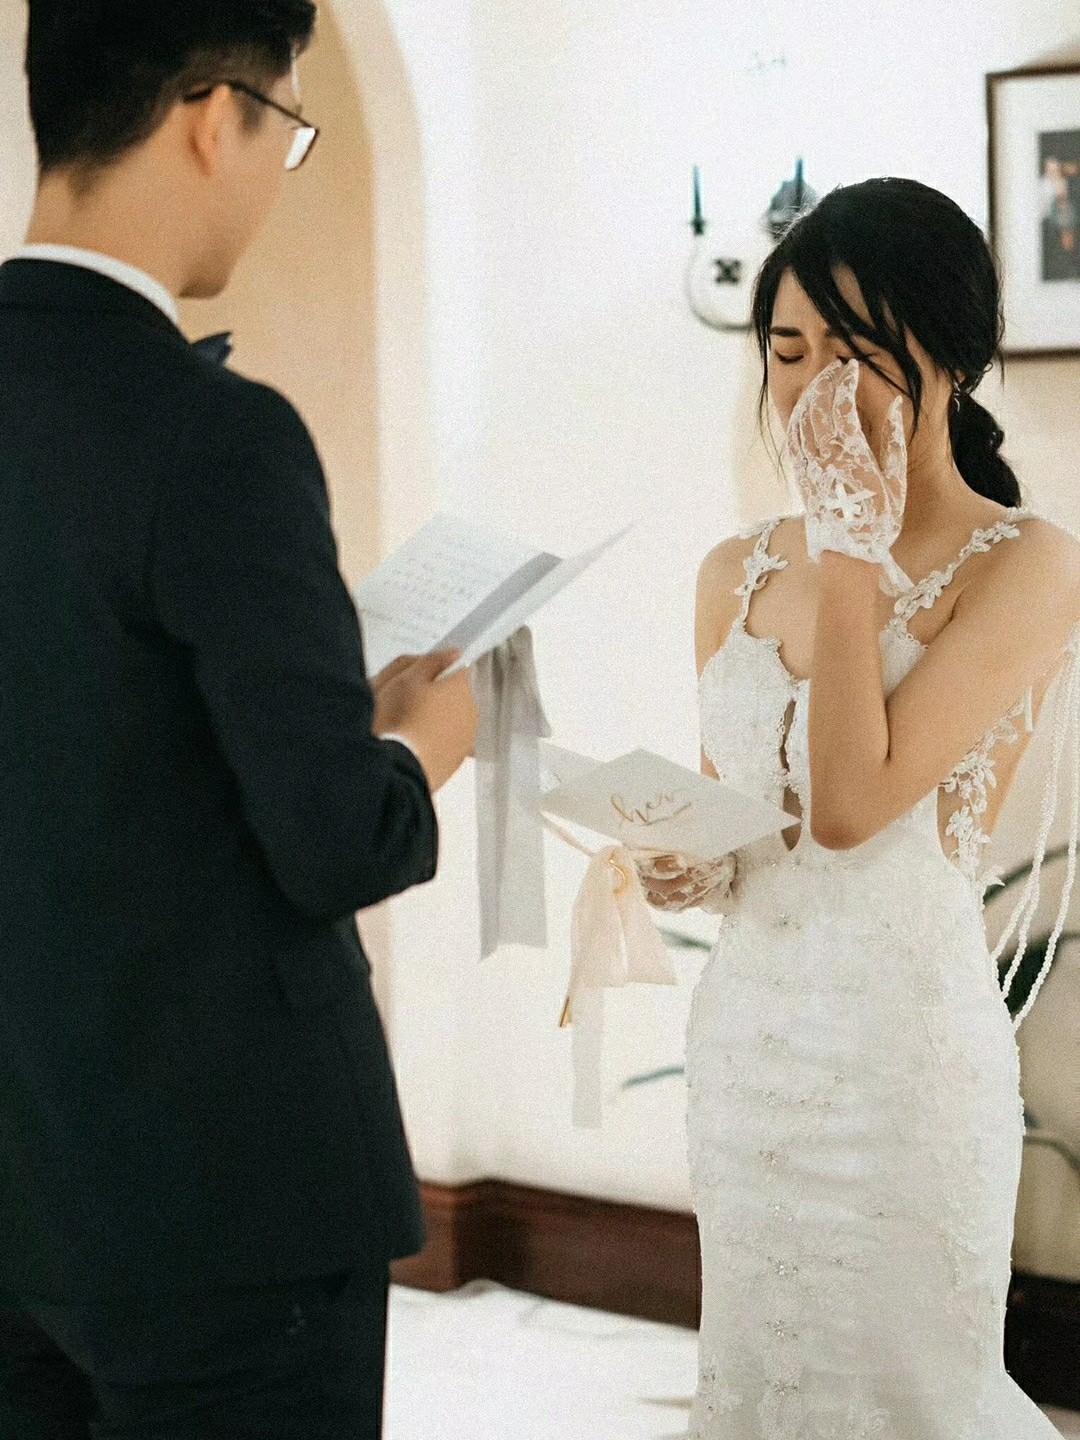 Chuyên gia lên lịch chăm sóc da cho cô dâu, quan trọng nhất là tips đắp mặt nạ và uống nước vào ngày cưới  - Ảnh 7.